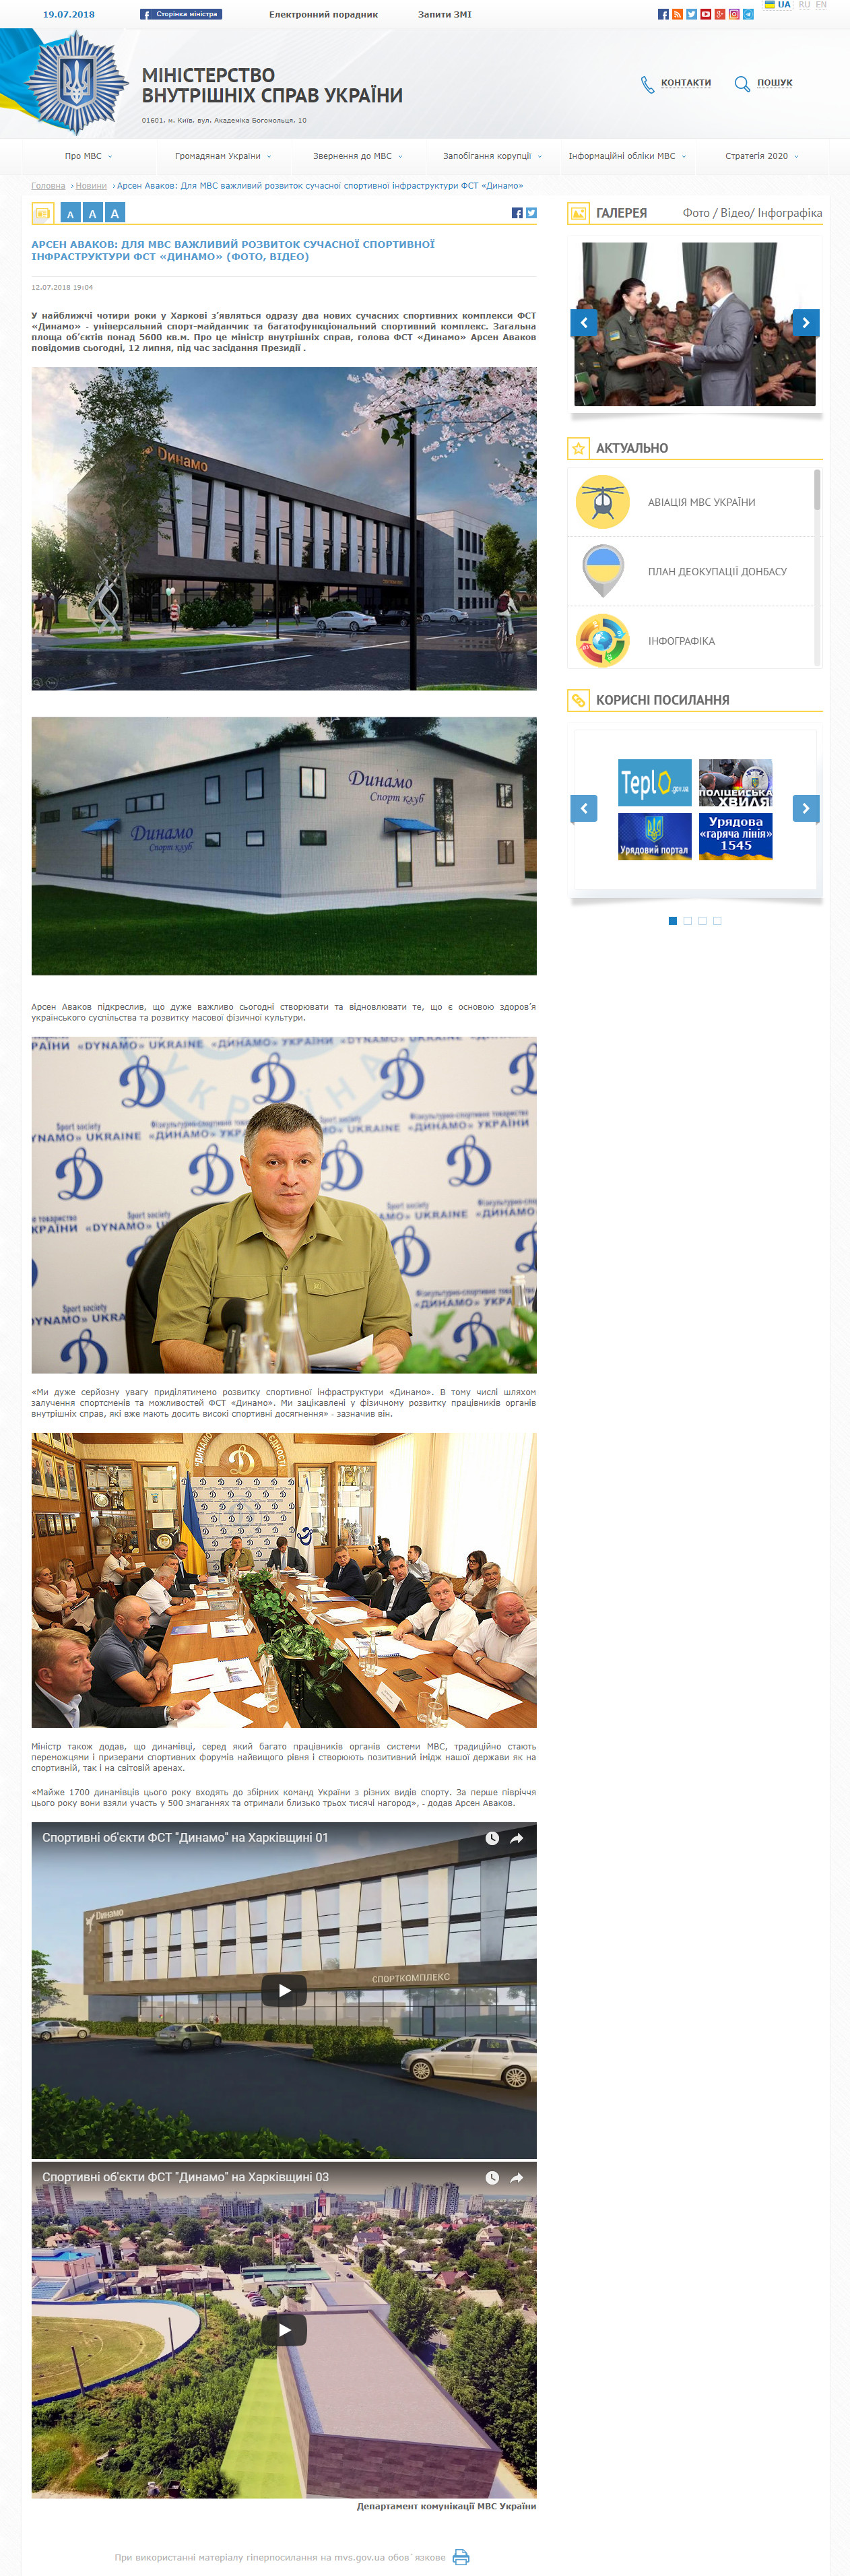 http://mvs.gov.ua/ua/news/14599_Arsen_Avakov_Dlya_MVS_vazhliviy_rozvitok_suchasnoi_sportivnoi_infrastrukturi_FST_Dinamo_FOTO_VIDEO.htm